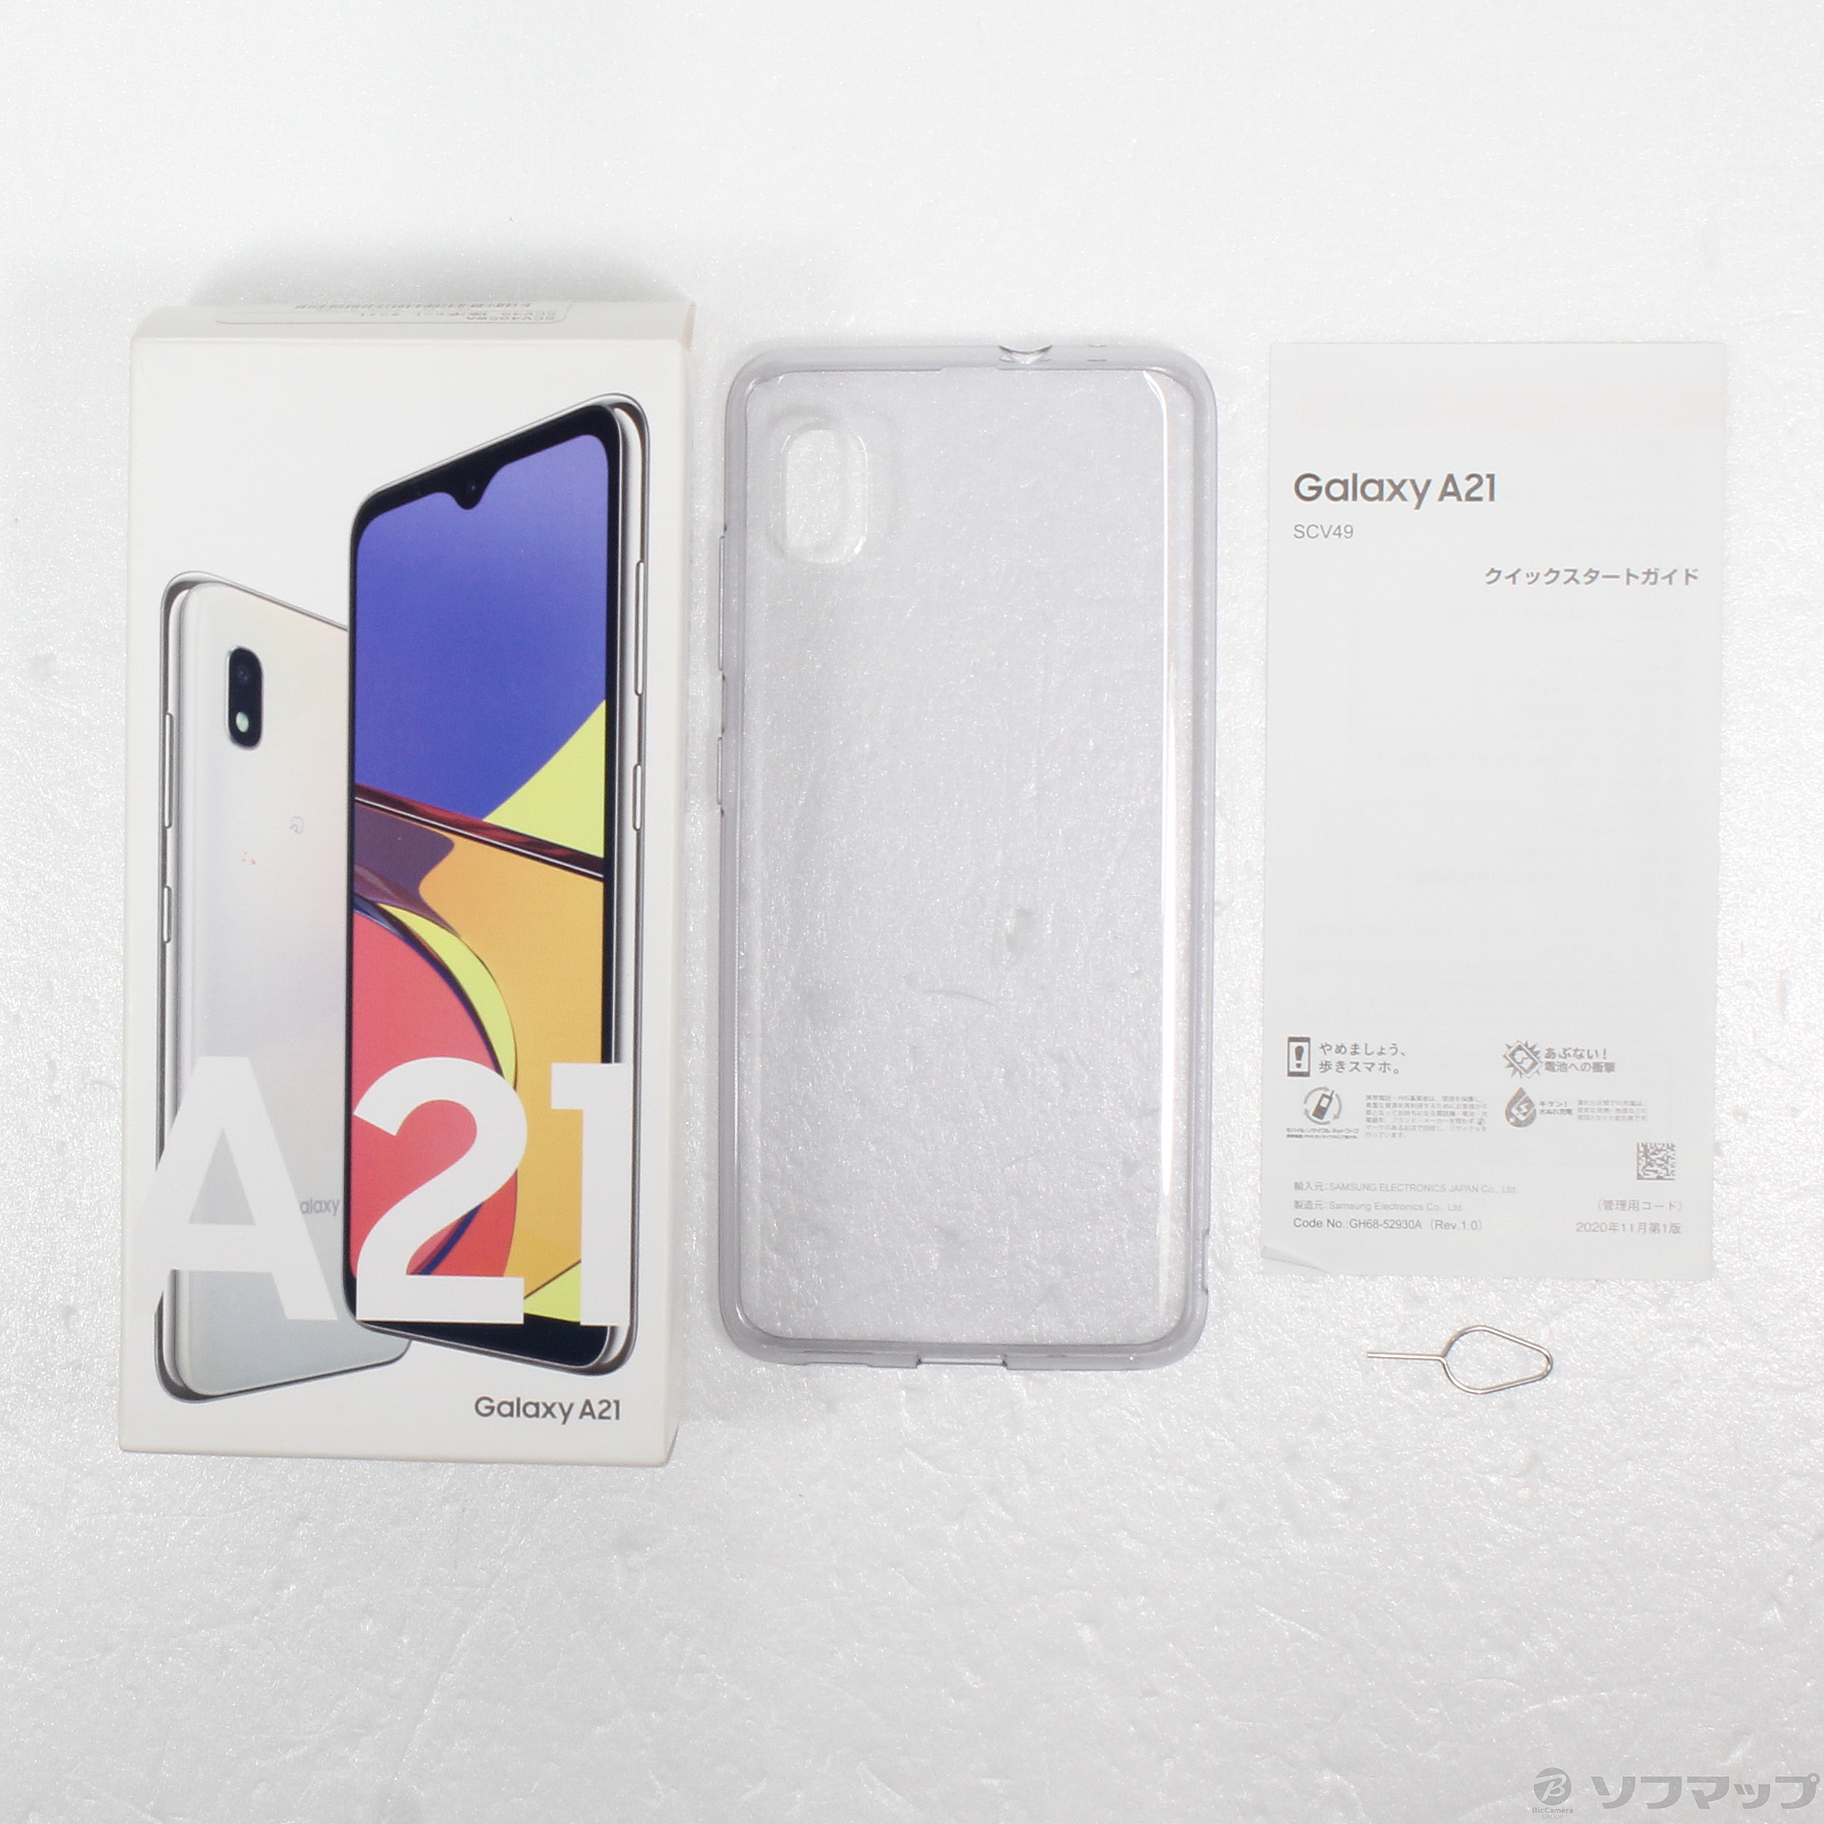 中古】Galaxy A21 シンプル 64GB ホワイト SCV49 auロック解除SIM